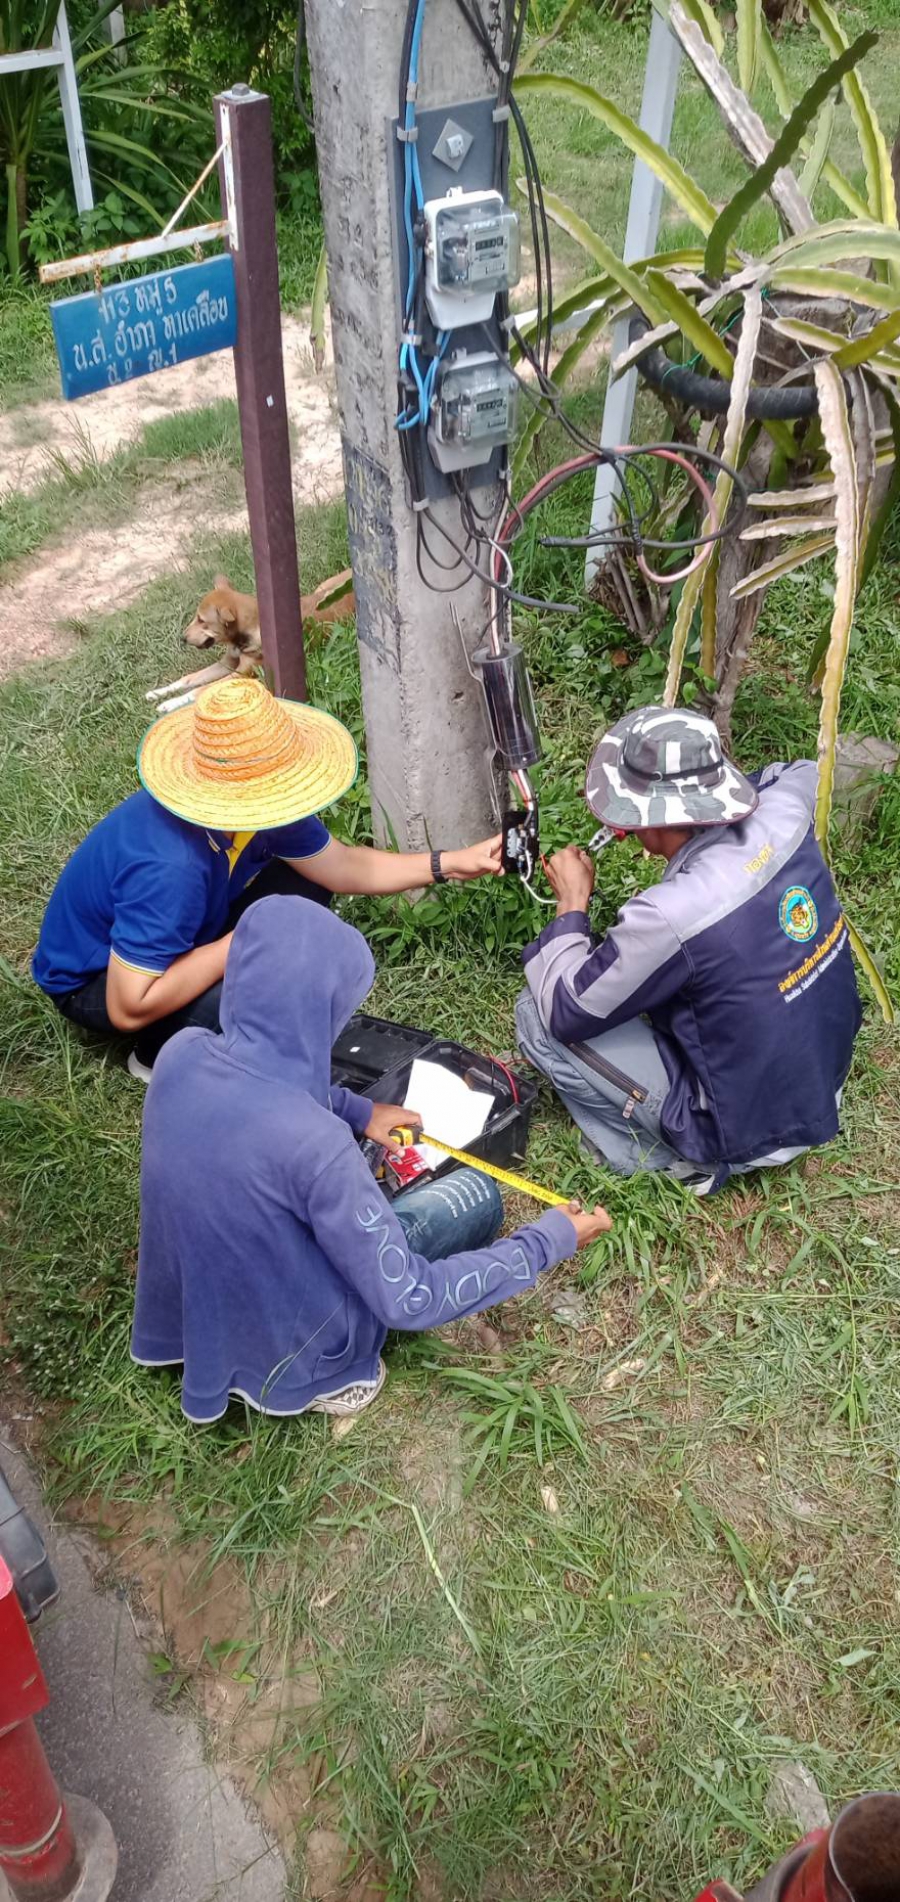 วันอังคารที่ 13 มิถุนายน 2566 เจ้าหน้าที่องค์การบริหารส่วนตำบลห้วยข่า ออกปฏิบัติหน้าที่ซ่อมแซม/ซ่อมบำรุงไฟฟ้าส่องสว่าง เพื่อแก้ปัญหาและบรรเทาความเดือดร้อนของประชาชนในเขตพื้นที่ตำบลห้วยข่าบ้านแก้งสว่าง ม.5 และบ้านเก่ากลาง หมู่ 12